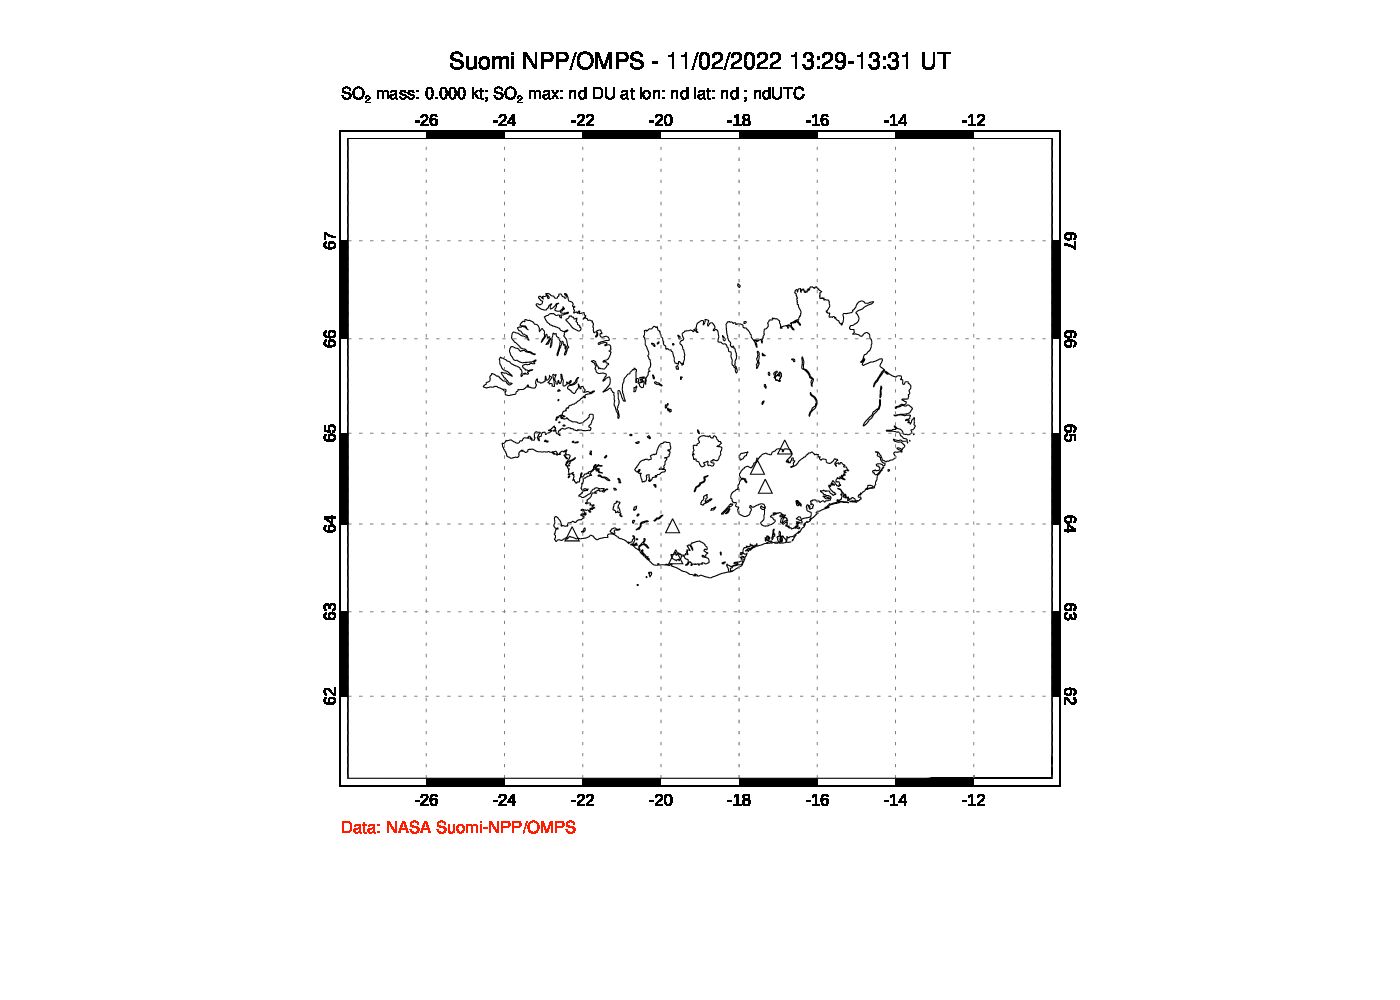 A sulfur dioxide image over Iceland on Nov 02, 2022.